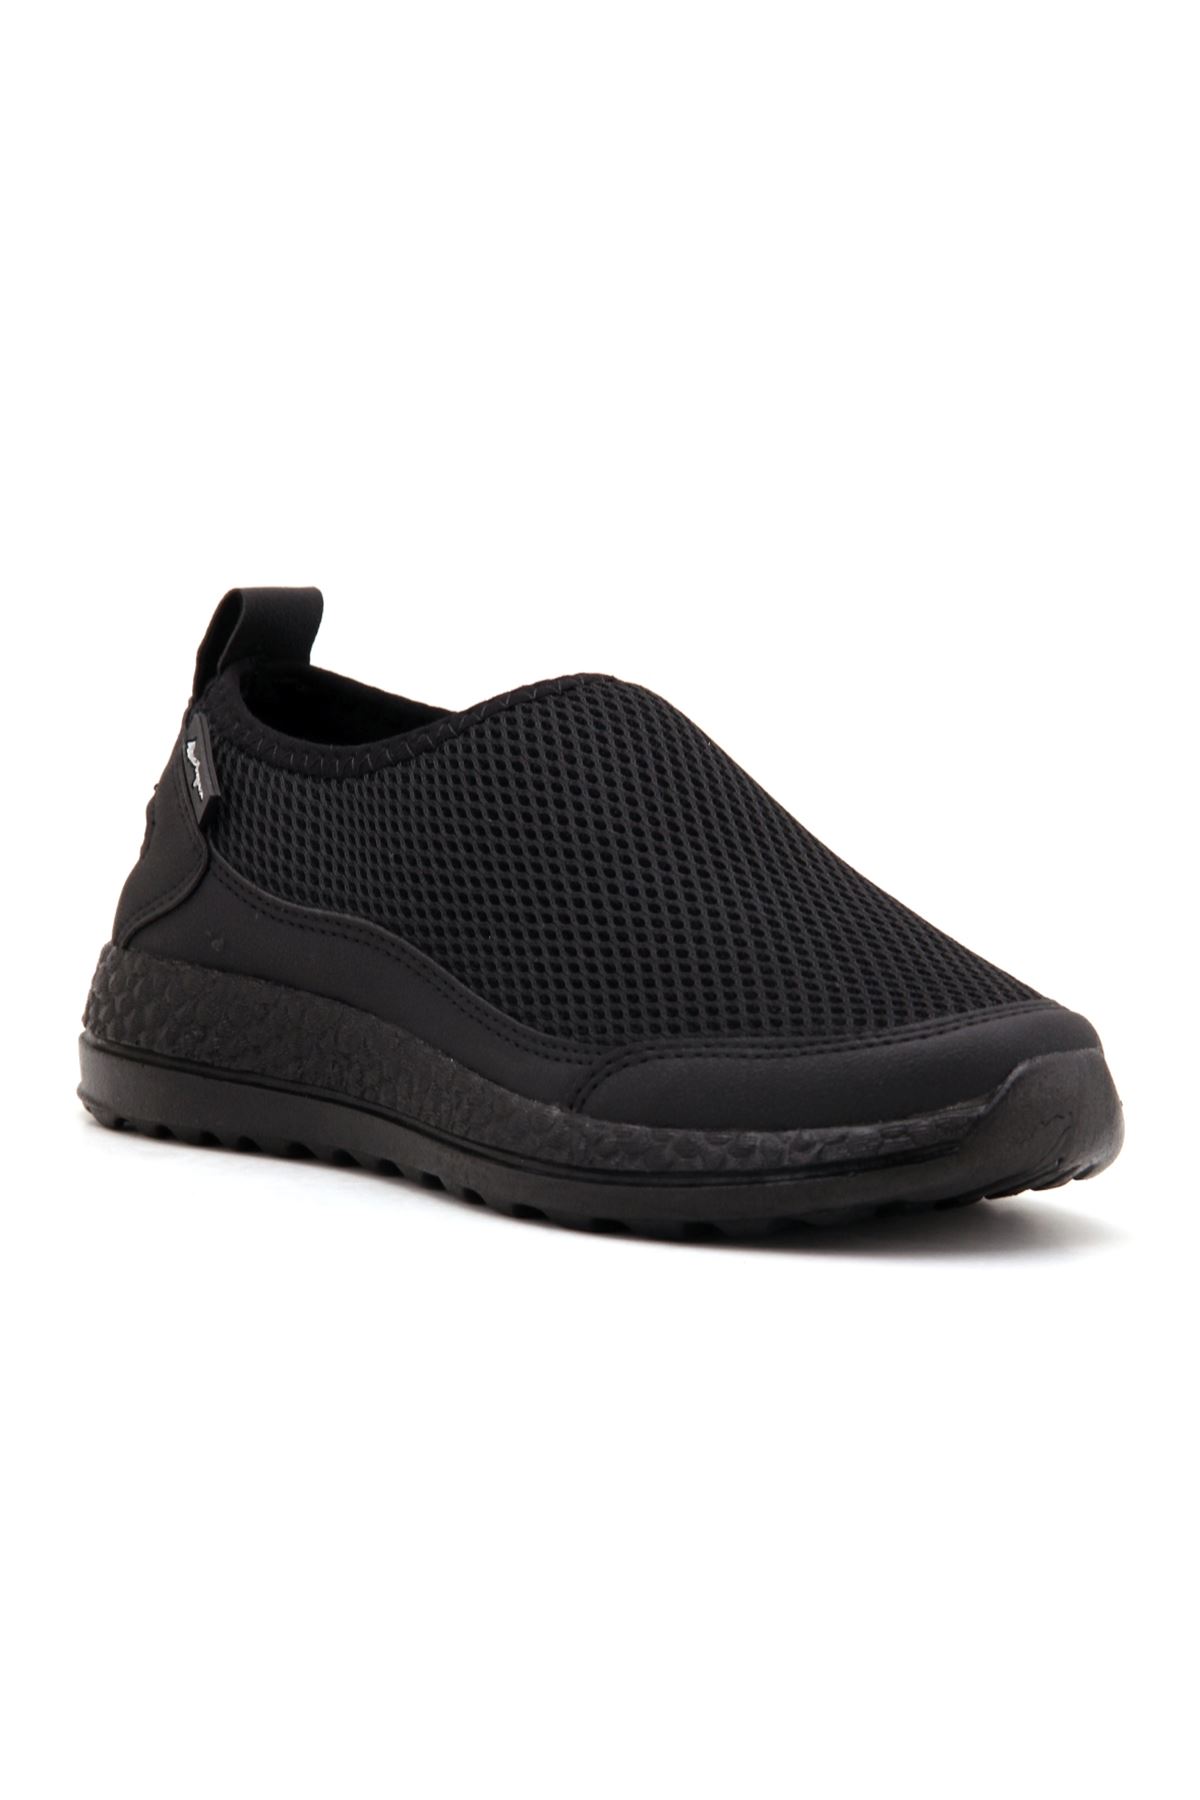 Ayaktamoda Comfort Kadın Spor Ayakkabı - Siyah